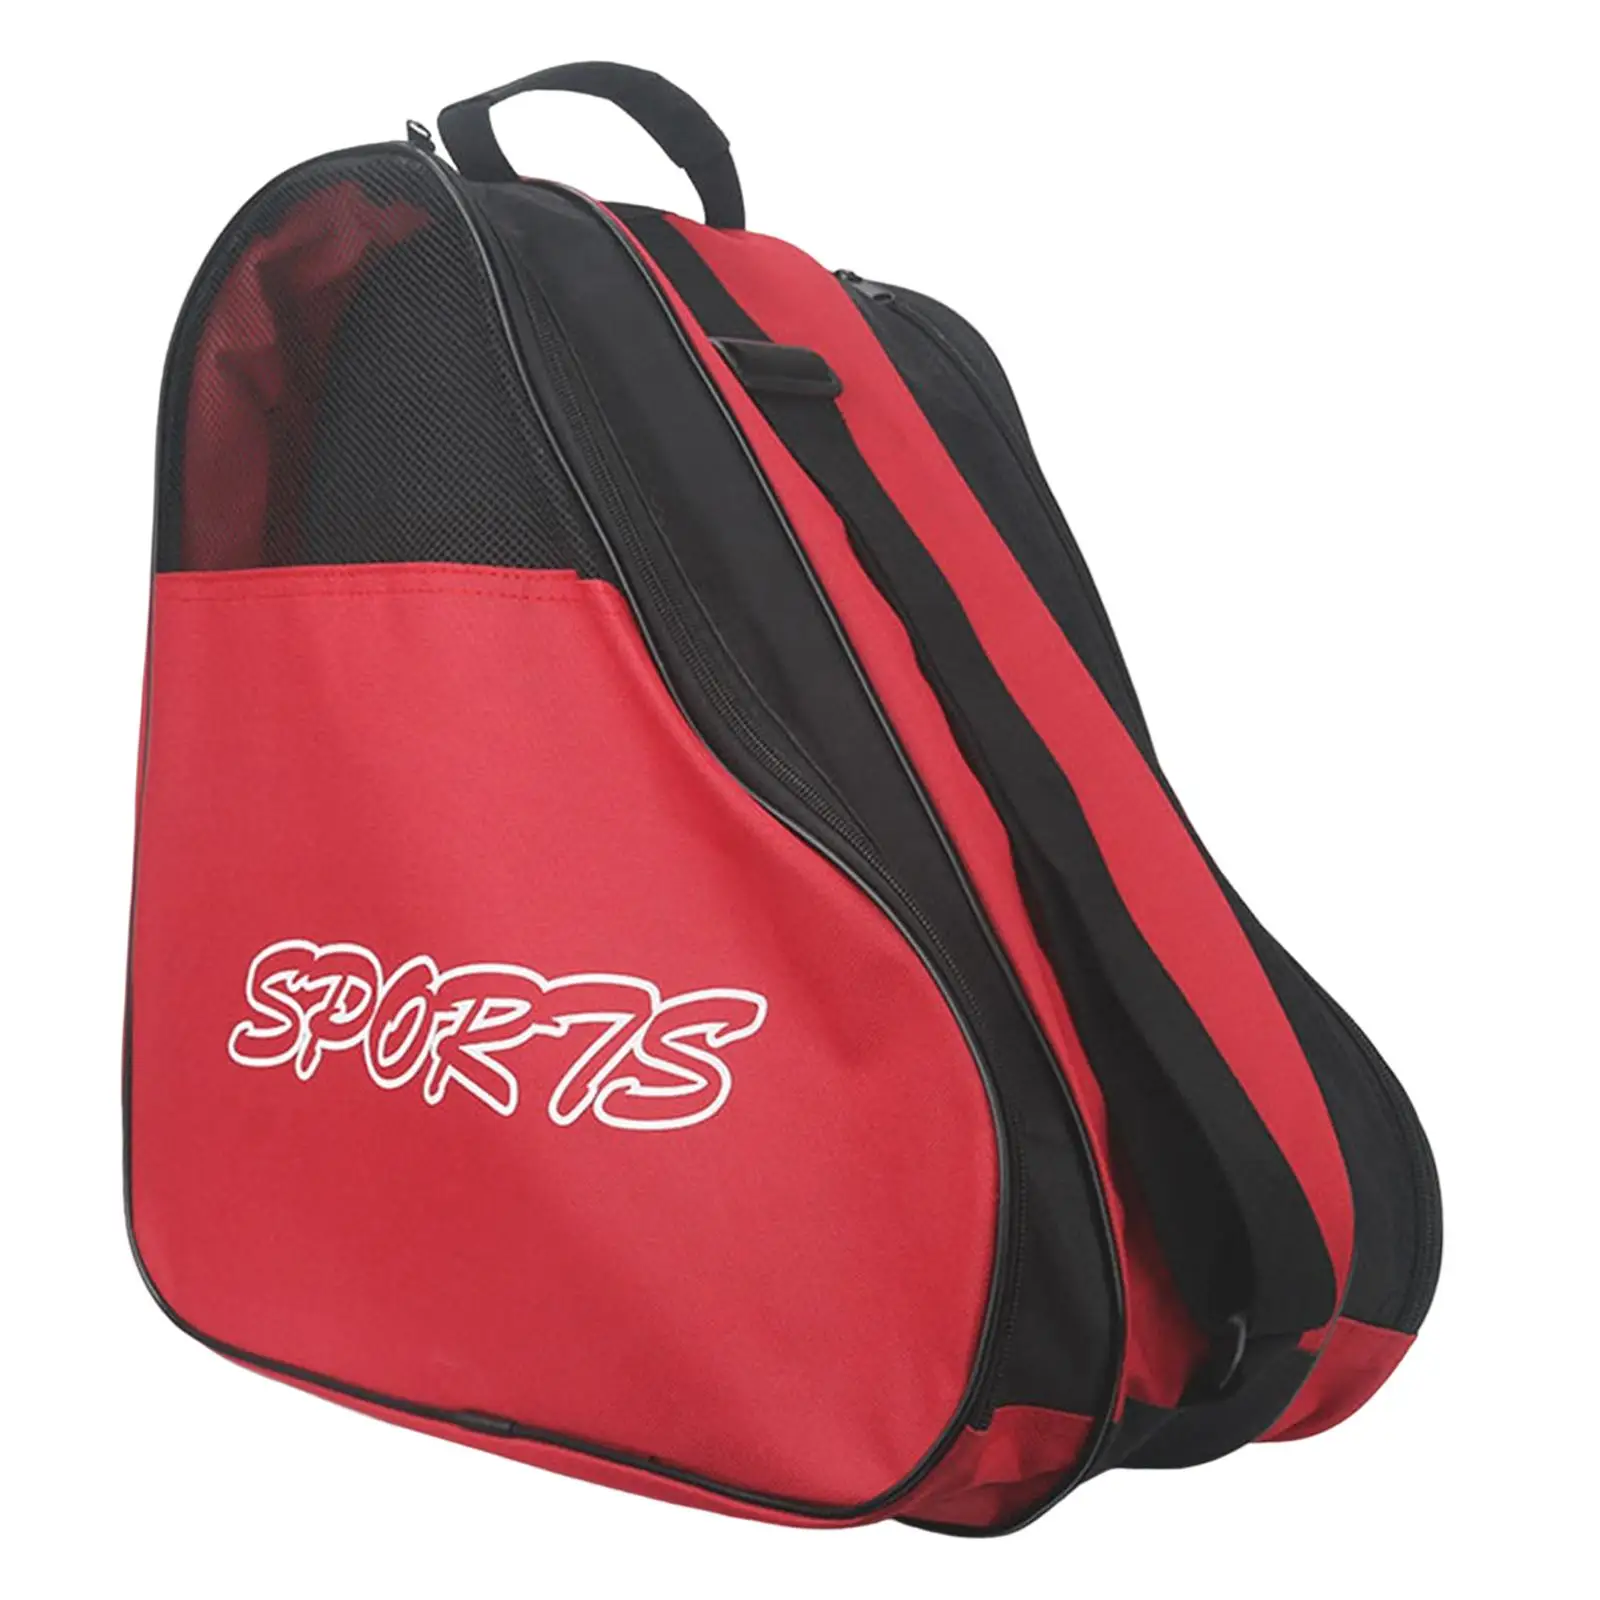 Portable Skating Shoes Bag Case Carrier bag Handle Ice Skating Bag Backpack for Sports Kids Adult Skating Men